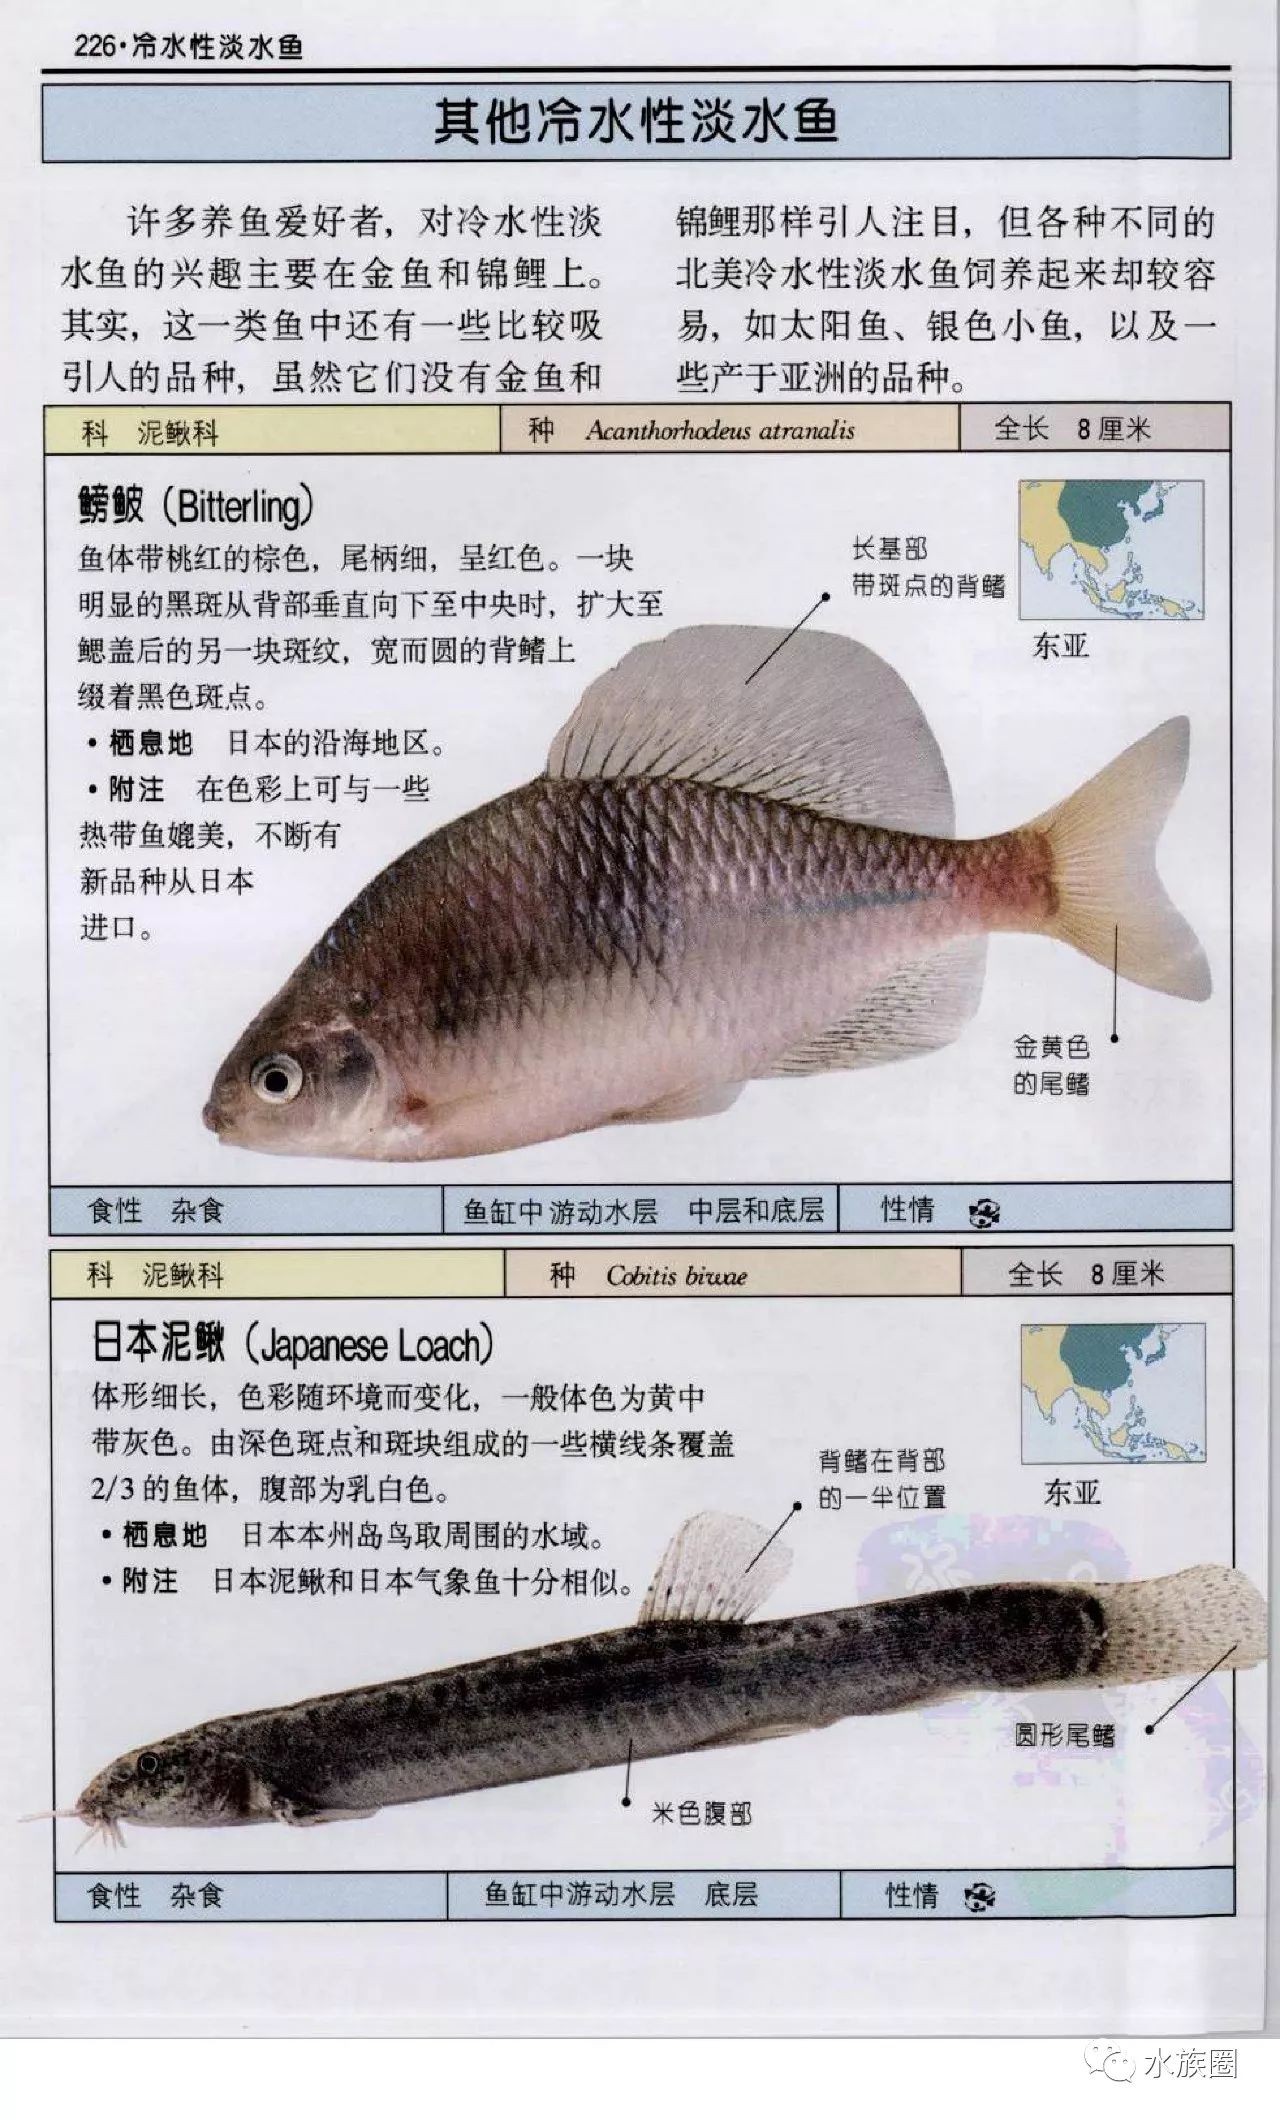 观赏鱼:全世界500多种观赏鱼的彩色图鉴 米尔斯